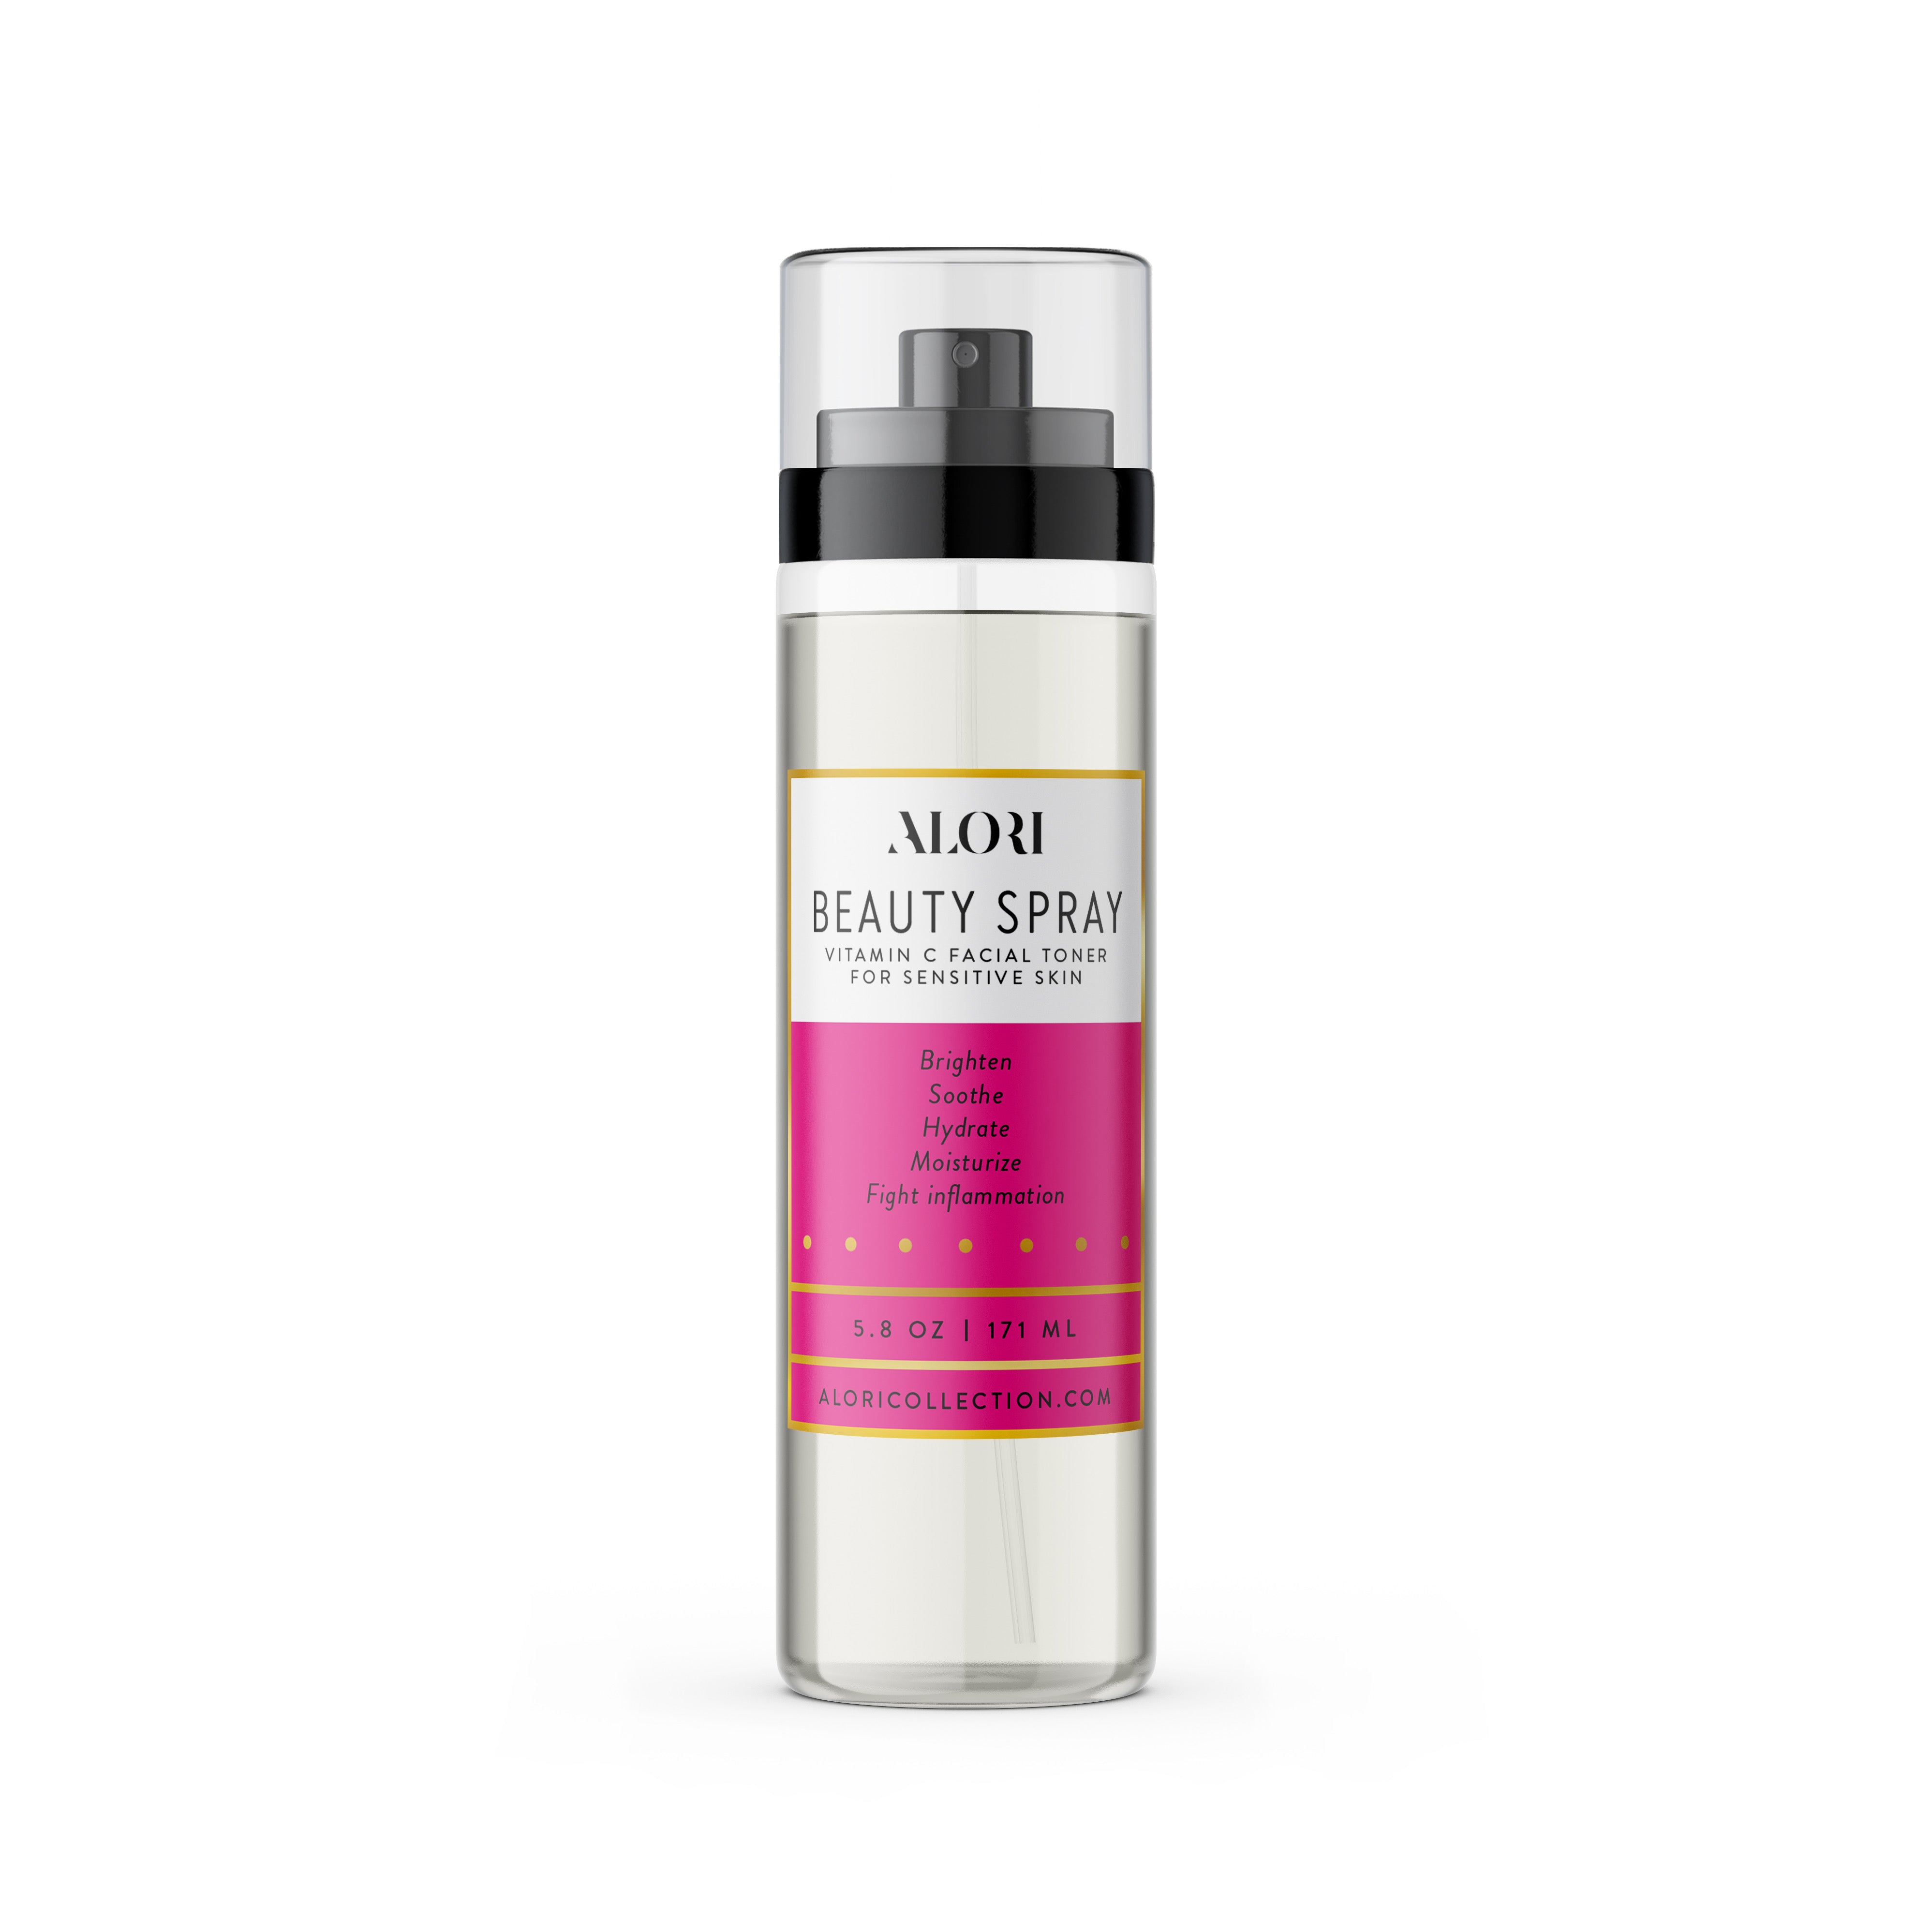 Beauty Spray Toner — Vitamin C